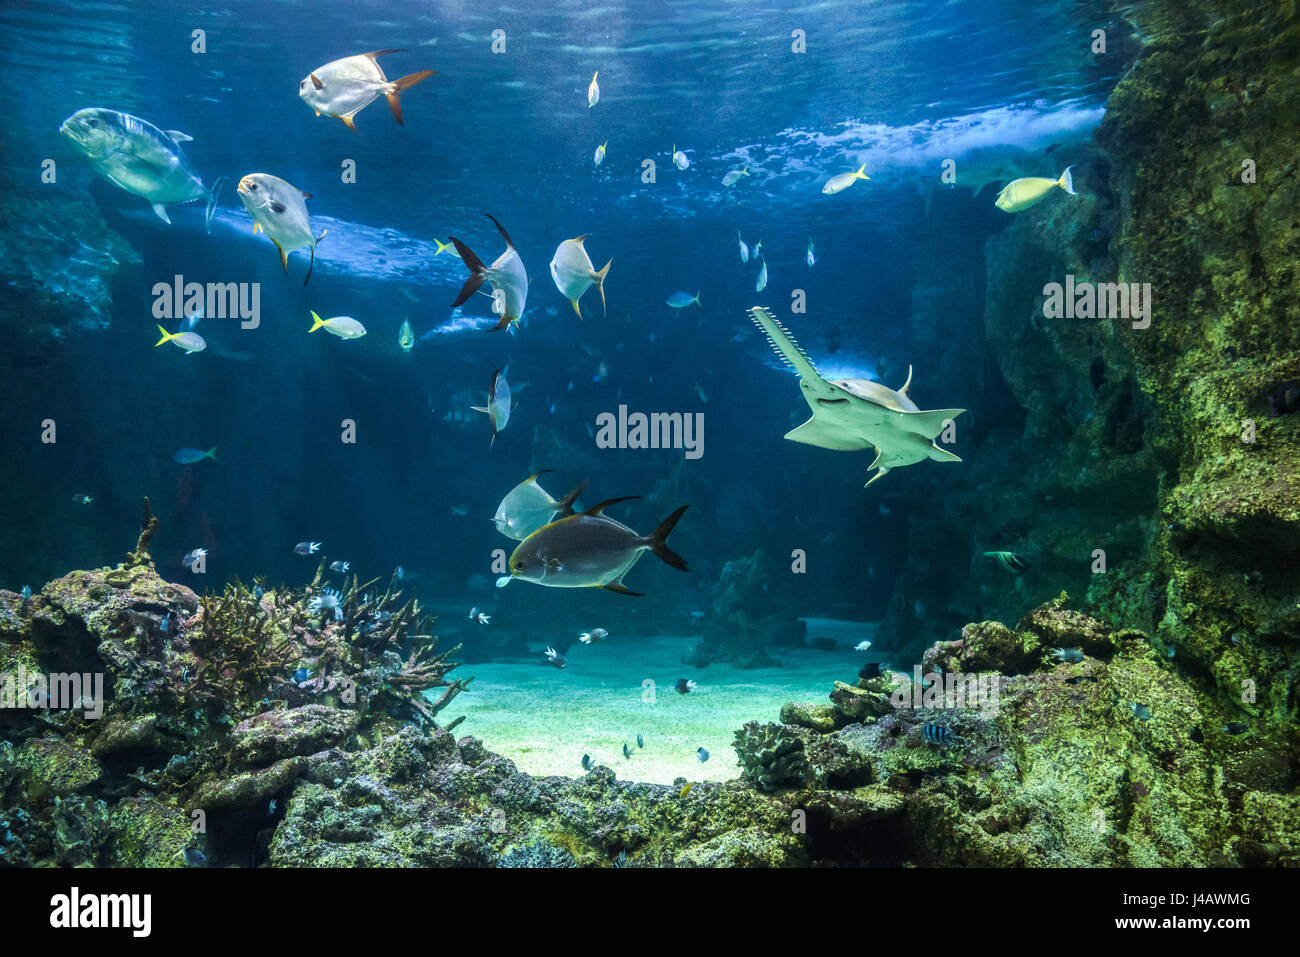 Grand poisson-scie, également connu sous le nom de Carpenter, requins et autres poissons nageant dans un grand aquarium Banque D'Images